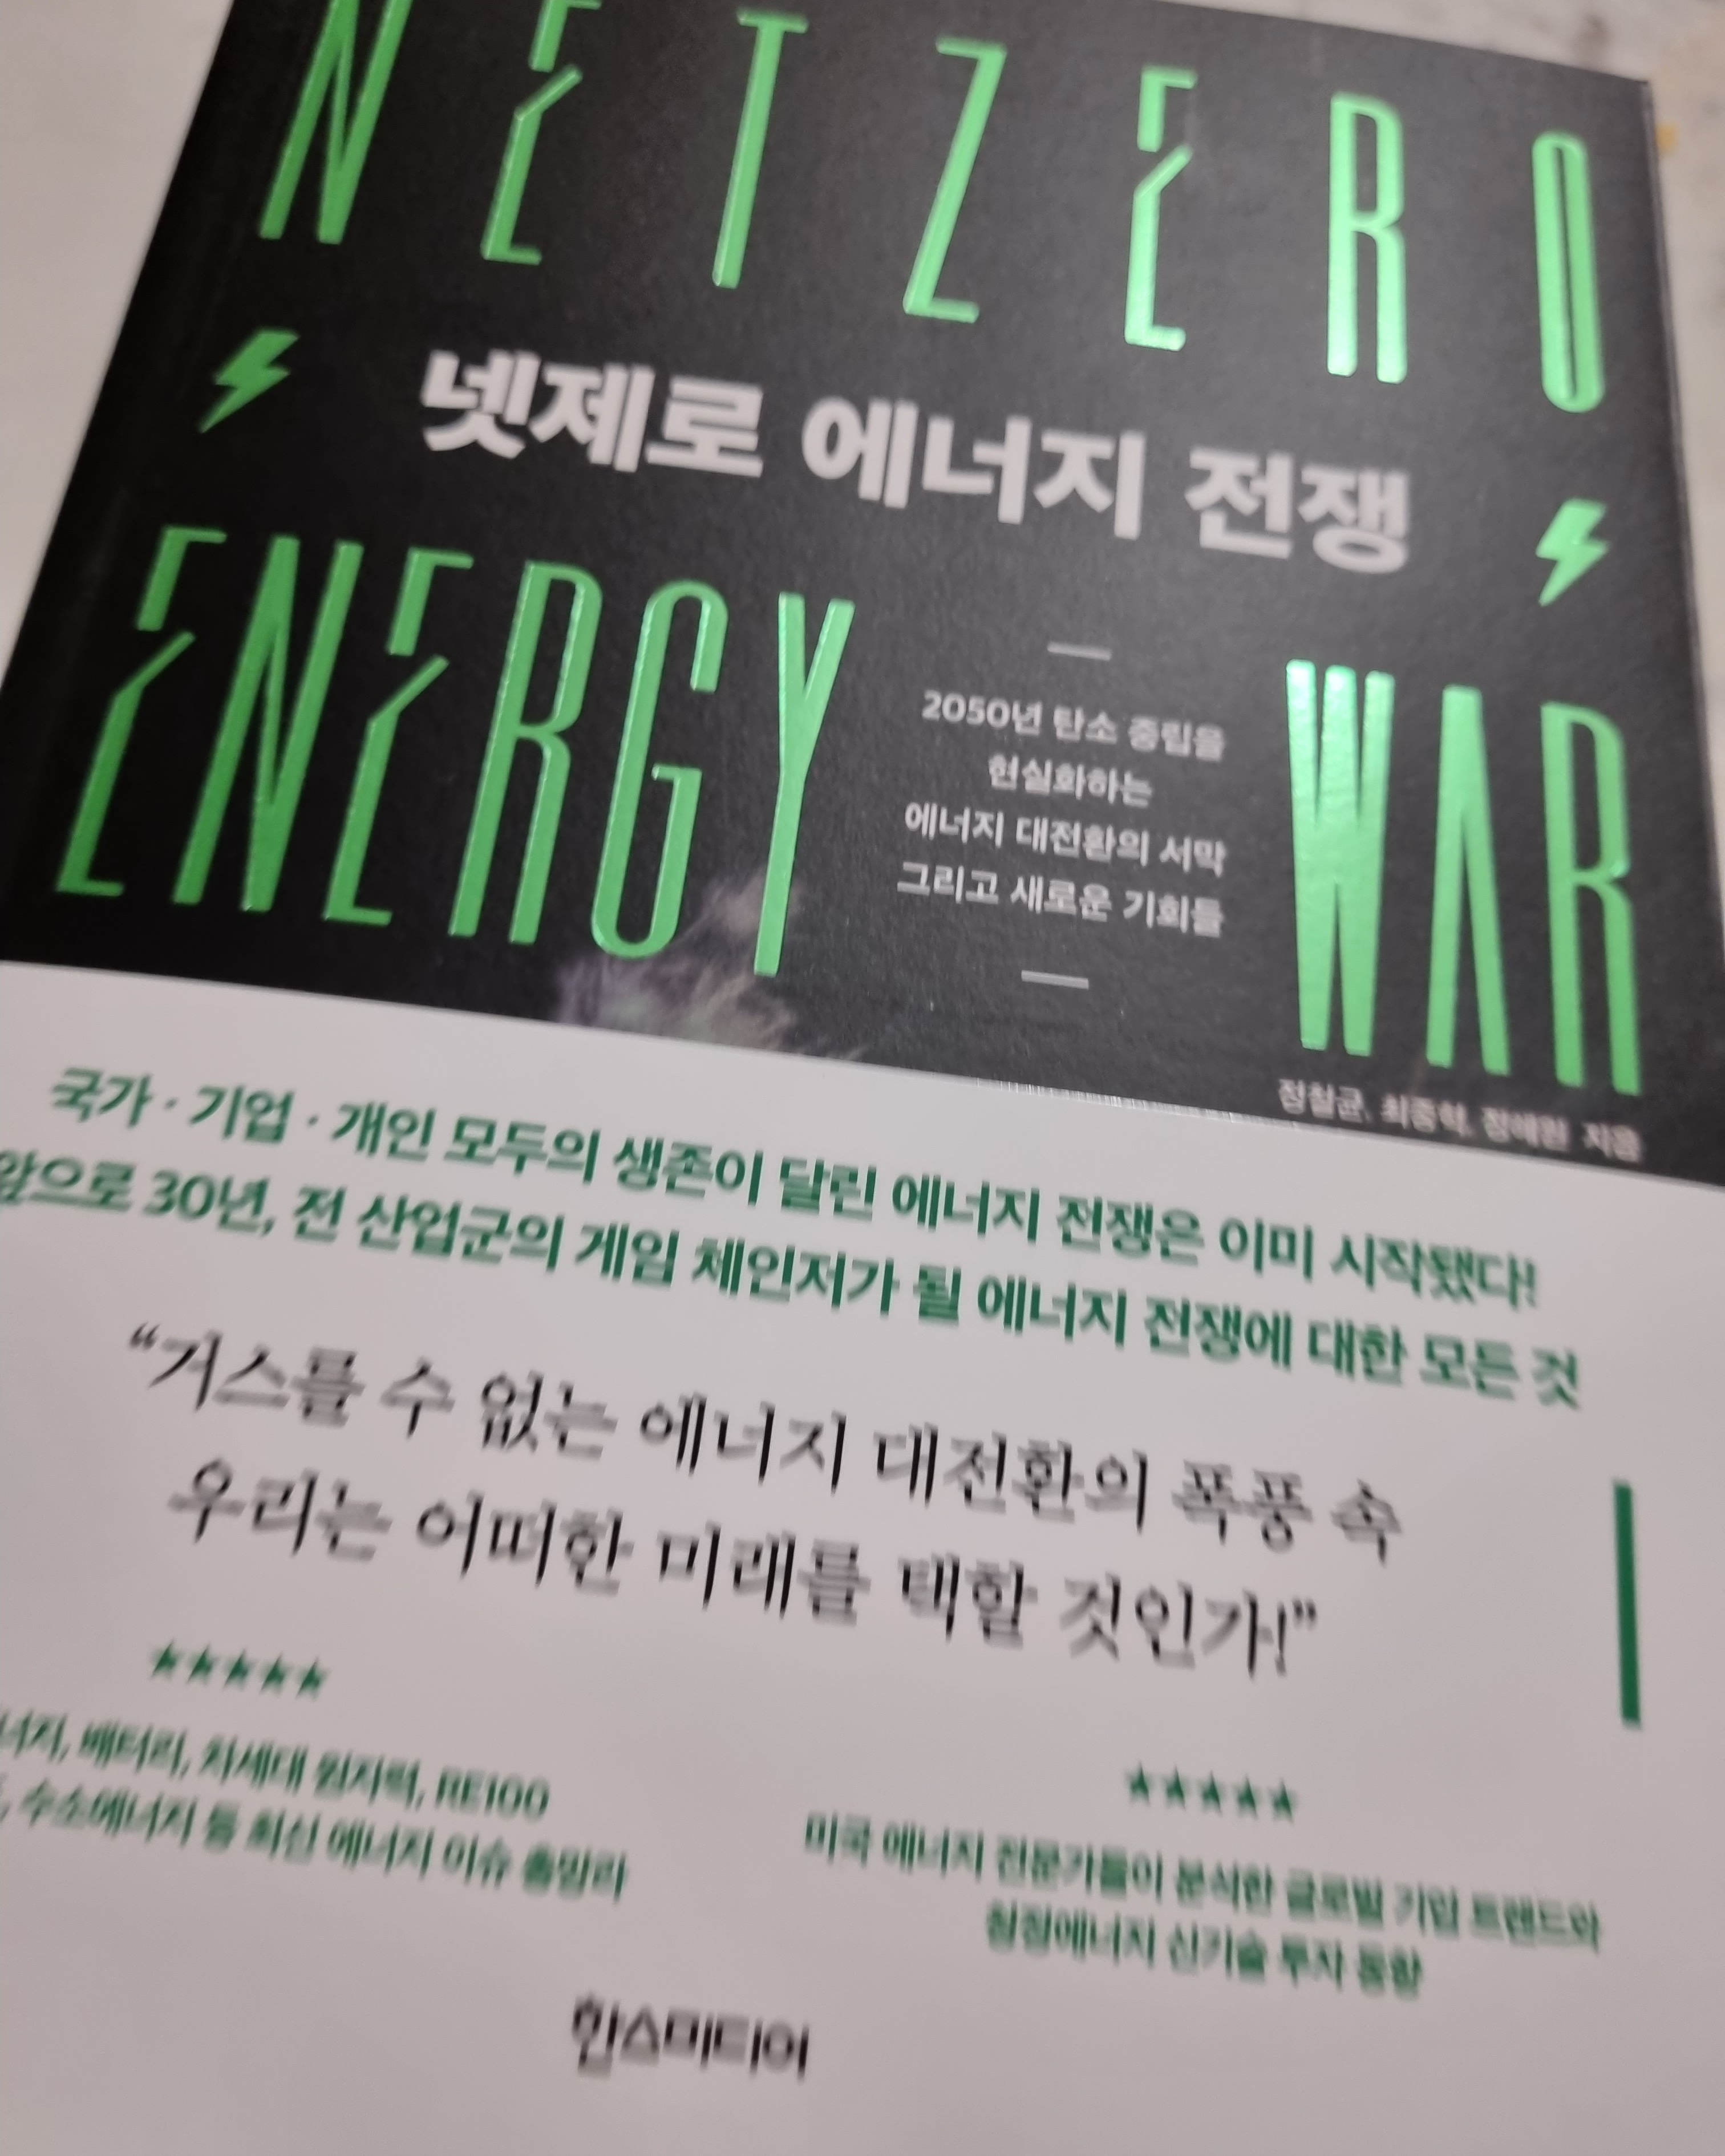 넷제로 에너지 전쟁